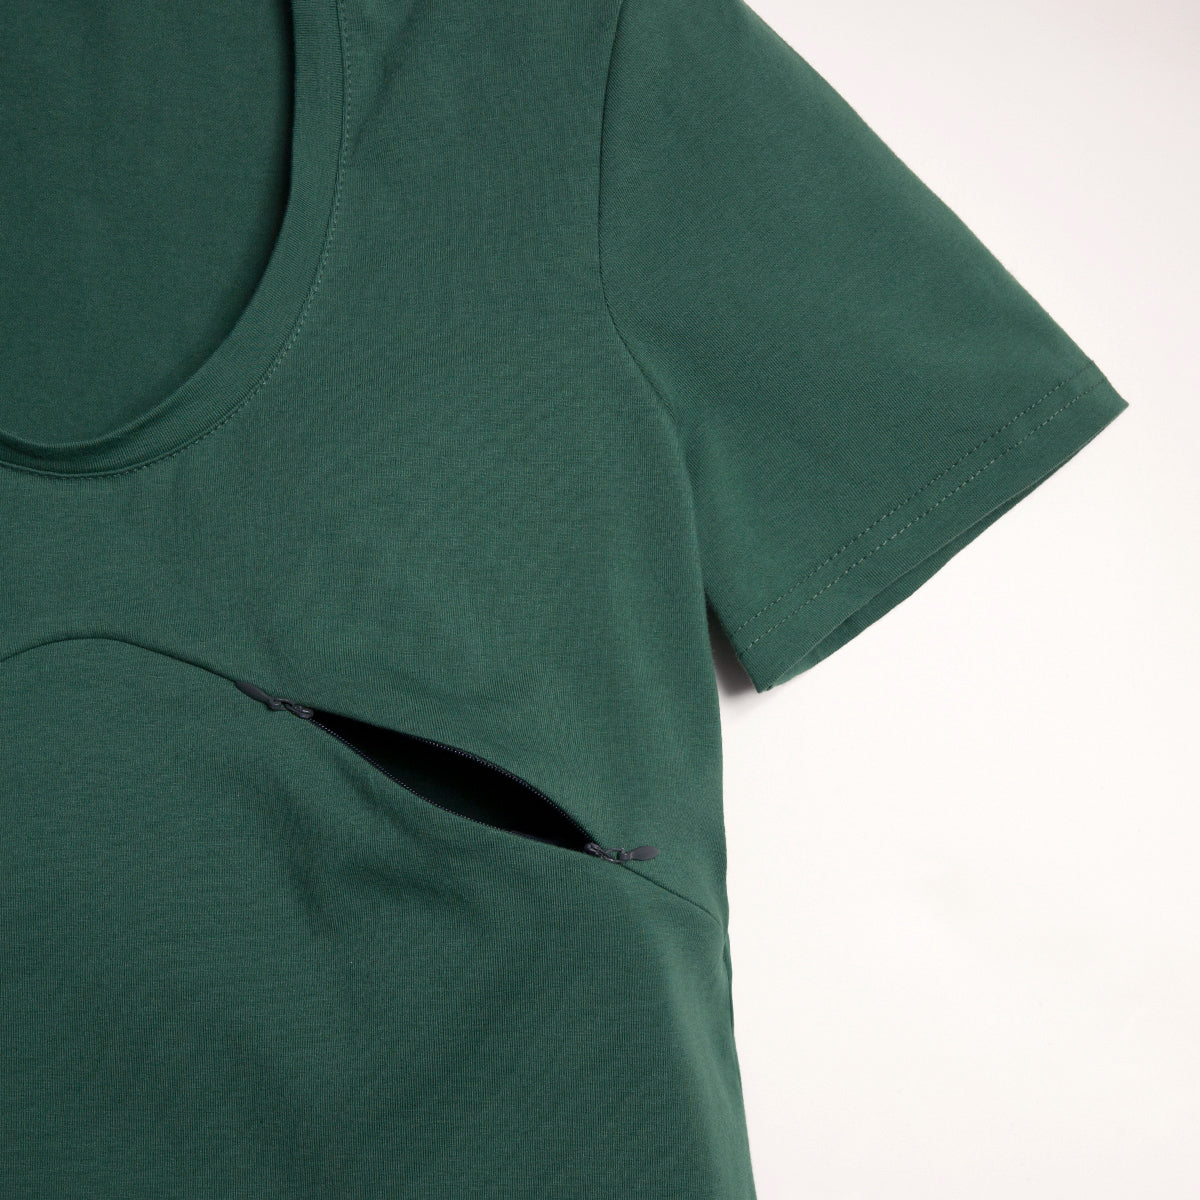 SMALL - VERT CACTUS t-shirt 3 en 1 maternité, allaitement, postpartum - Léger défaut ( réf #377 )